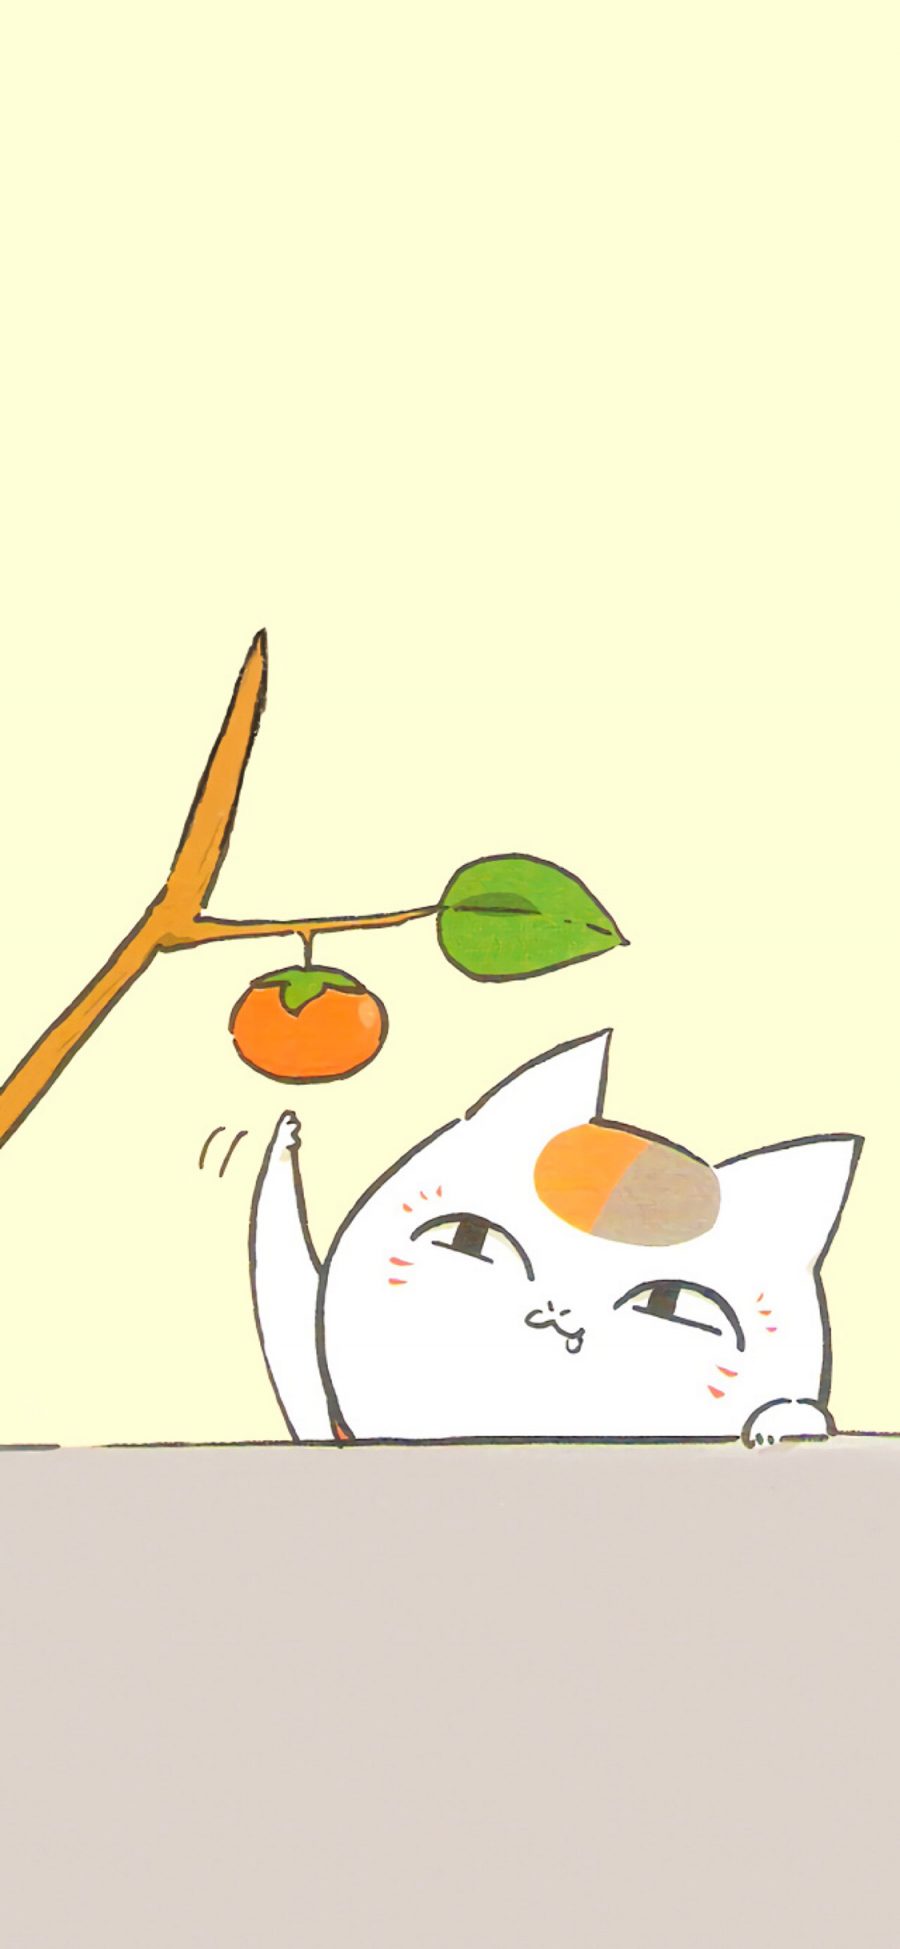 [2436×1125]日漫 夏目友人帐 猫老师 柿子 苹果手机动漫壁纸图片